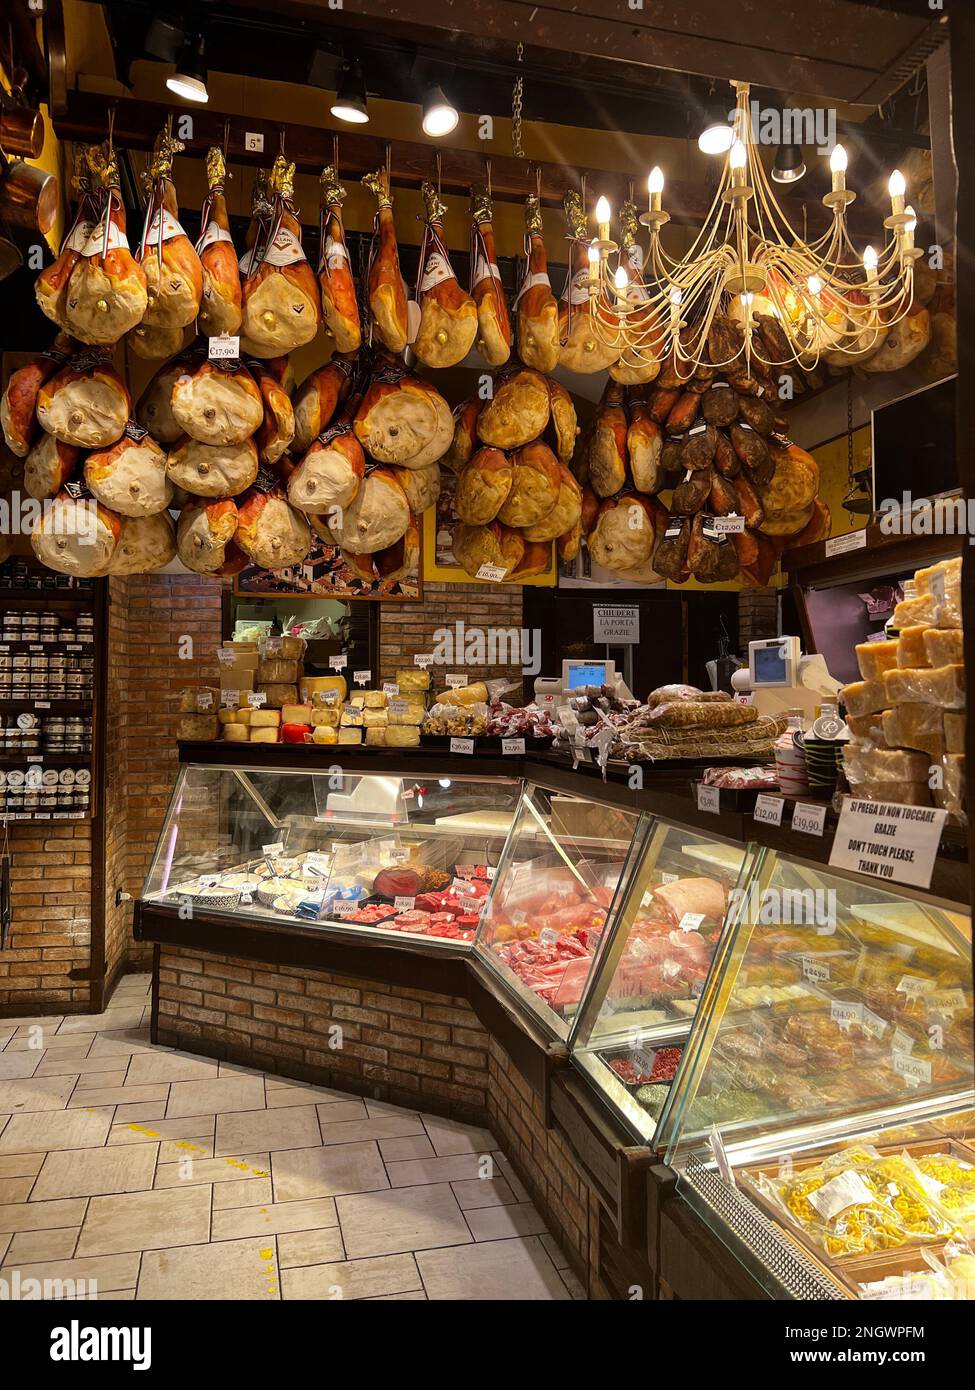 Un affascinante negozio di quartiere nel vecchio mercato di quadrilatero, Bologna Italia, che offre salumi tradizionali, formaggi e olio d'oliva. Foto Stock